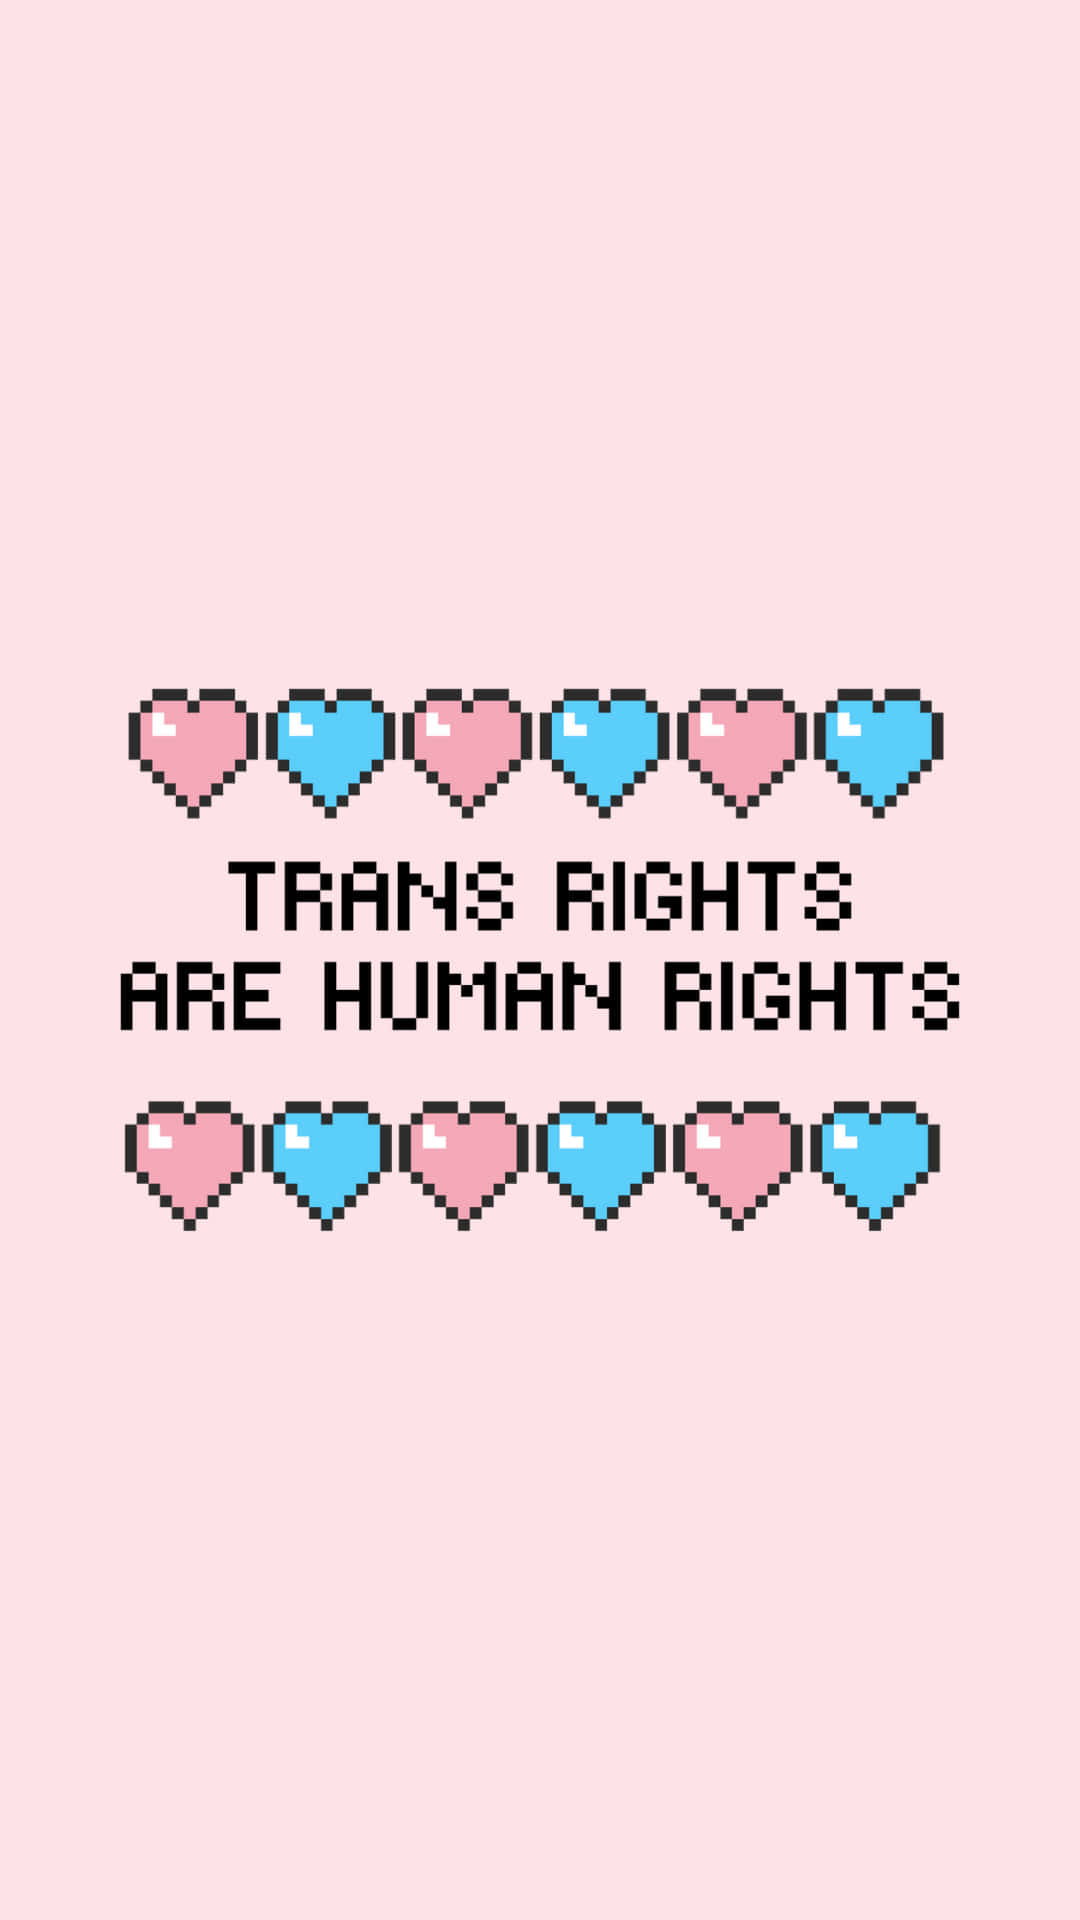 Transrets er menneskerettigheder - Pixel kunst Wallpaper